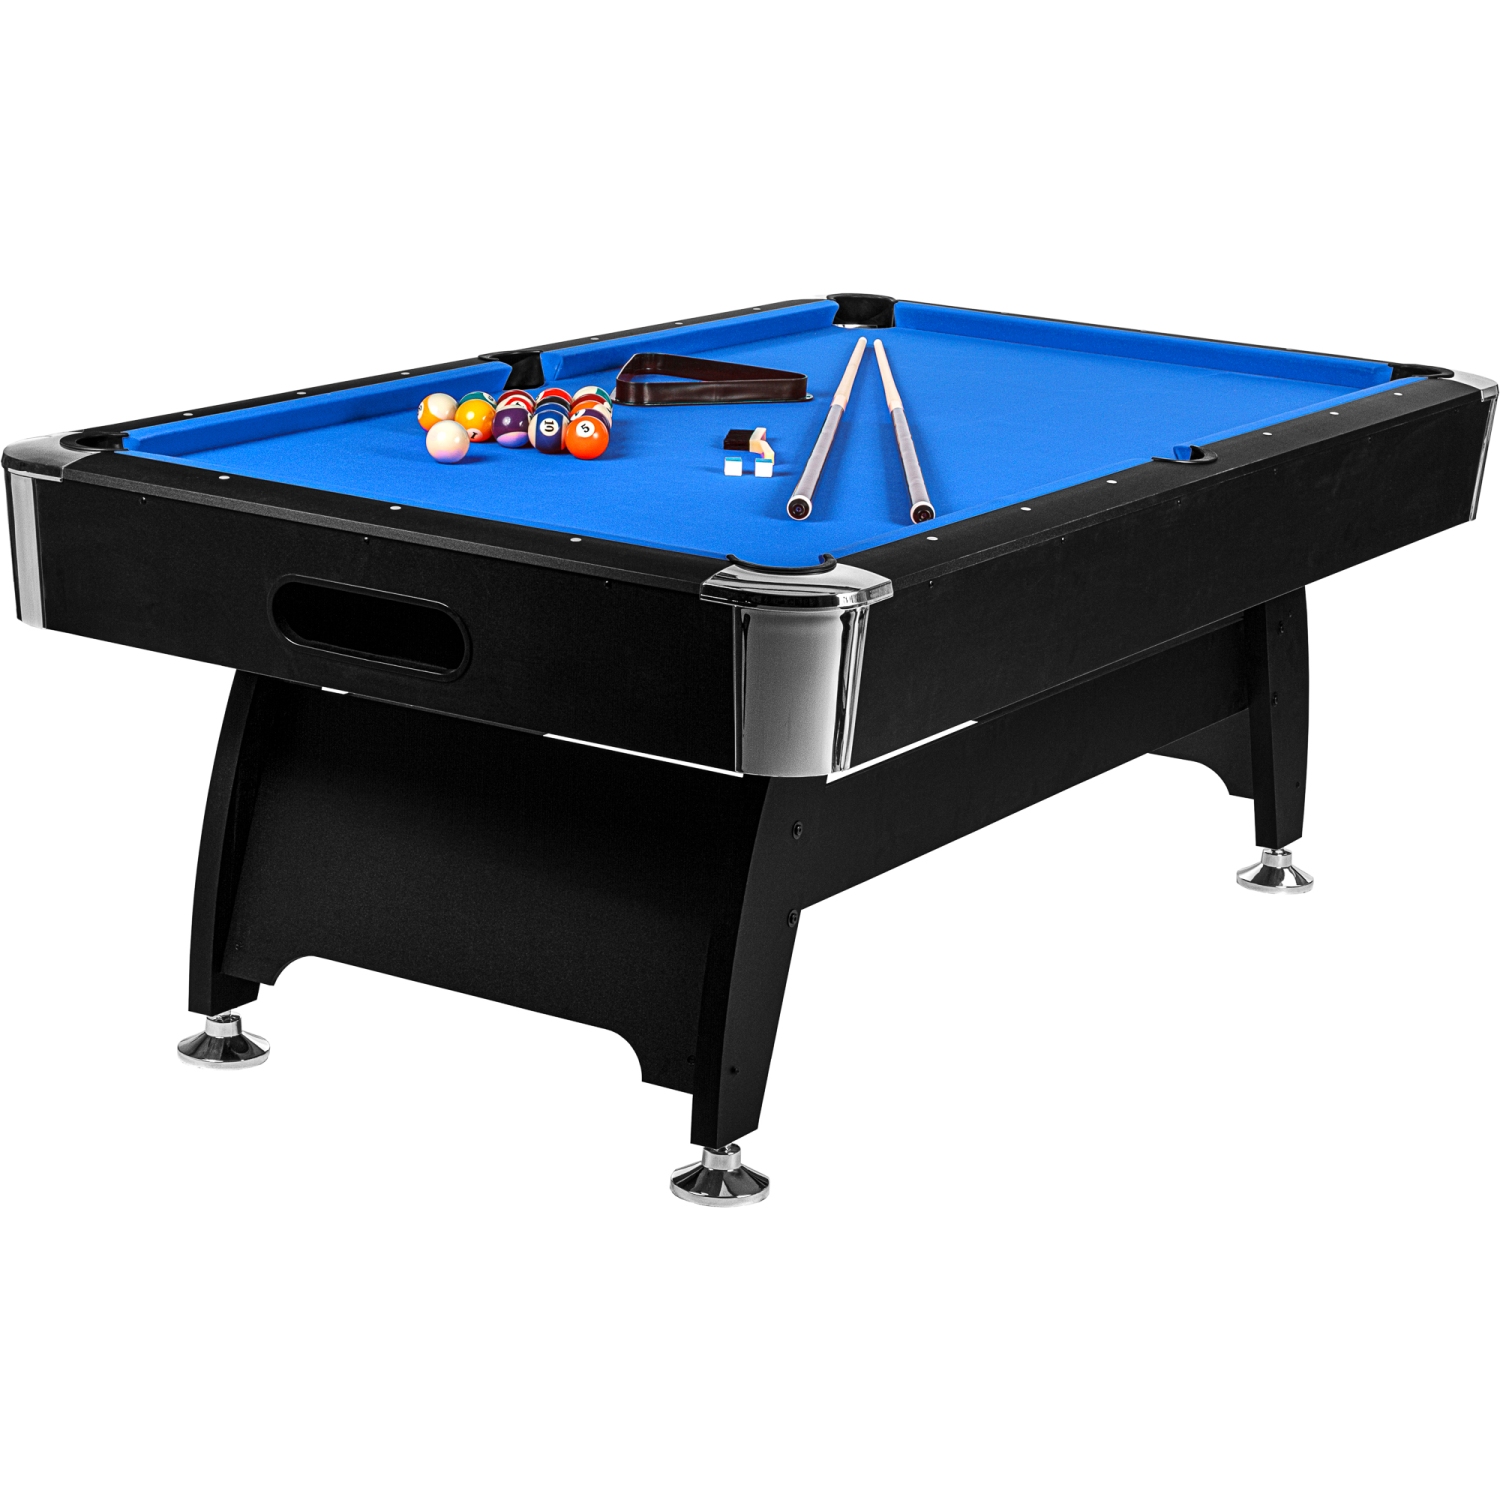 Table de billard Maxstore Table de billard 8 FT \Premium\ + accessoires, 9  coloris au choix, L 244x l 132x H 82 cm, décor noir, drap bleu